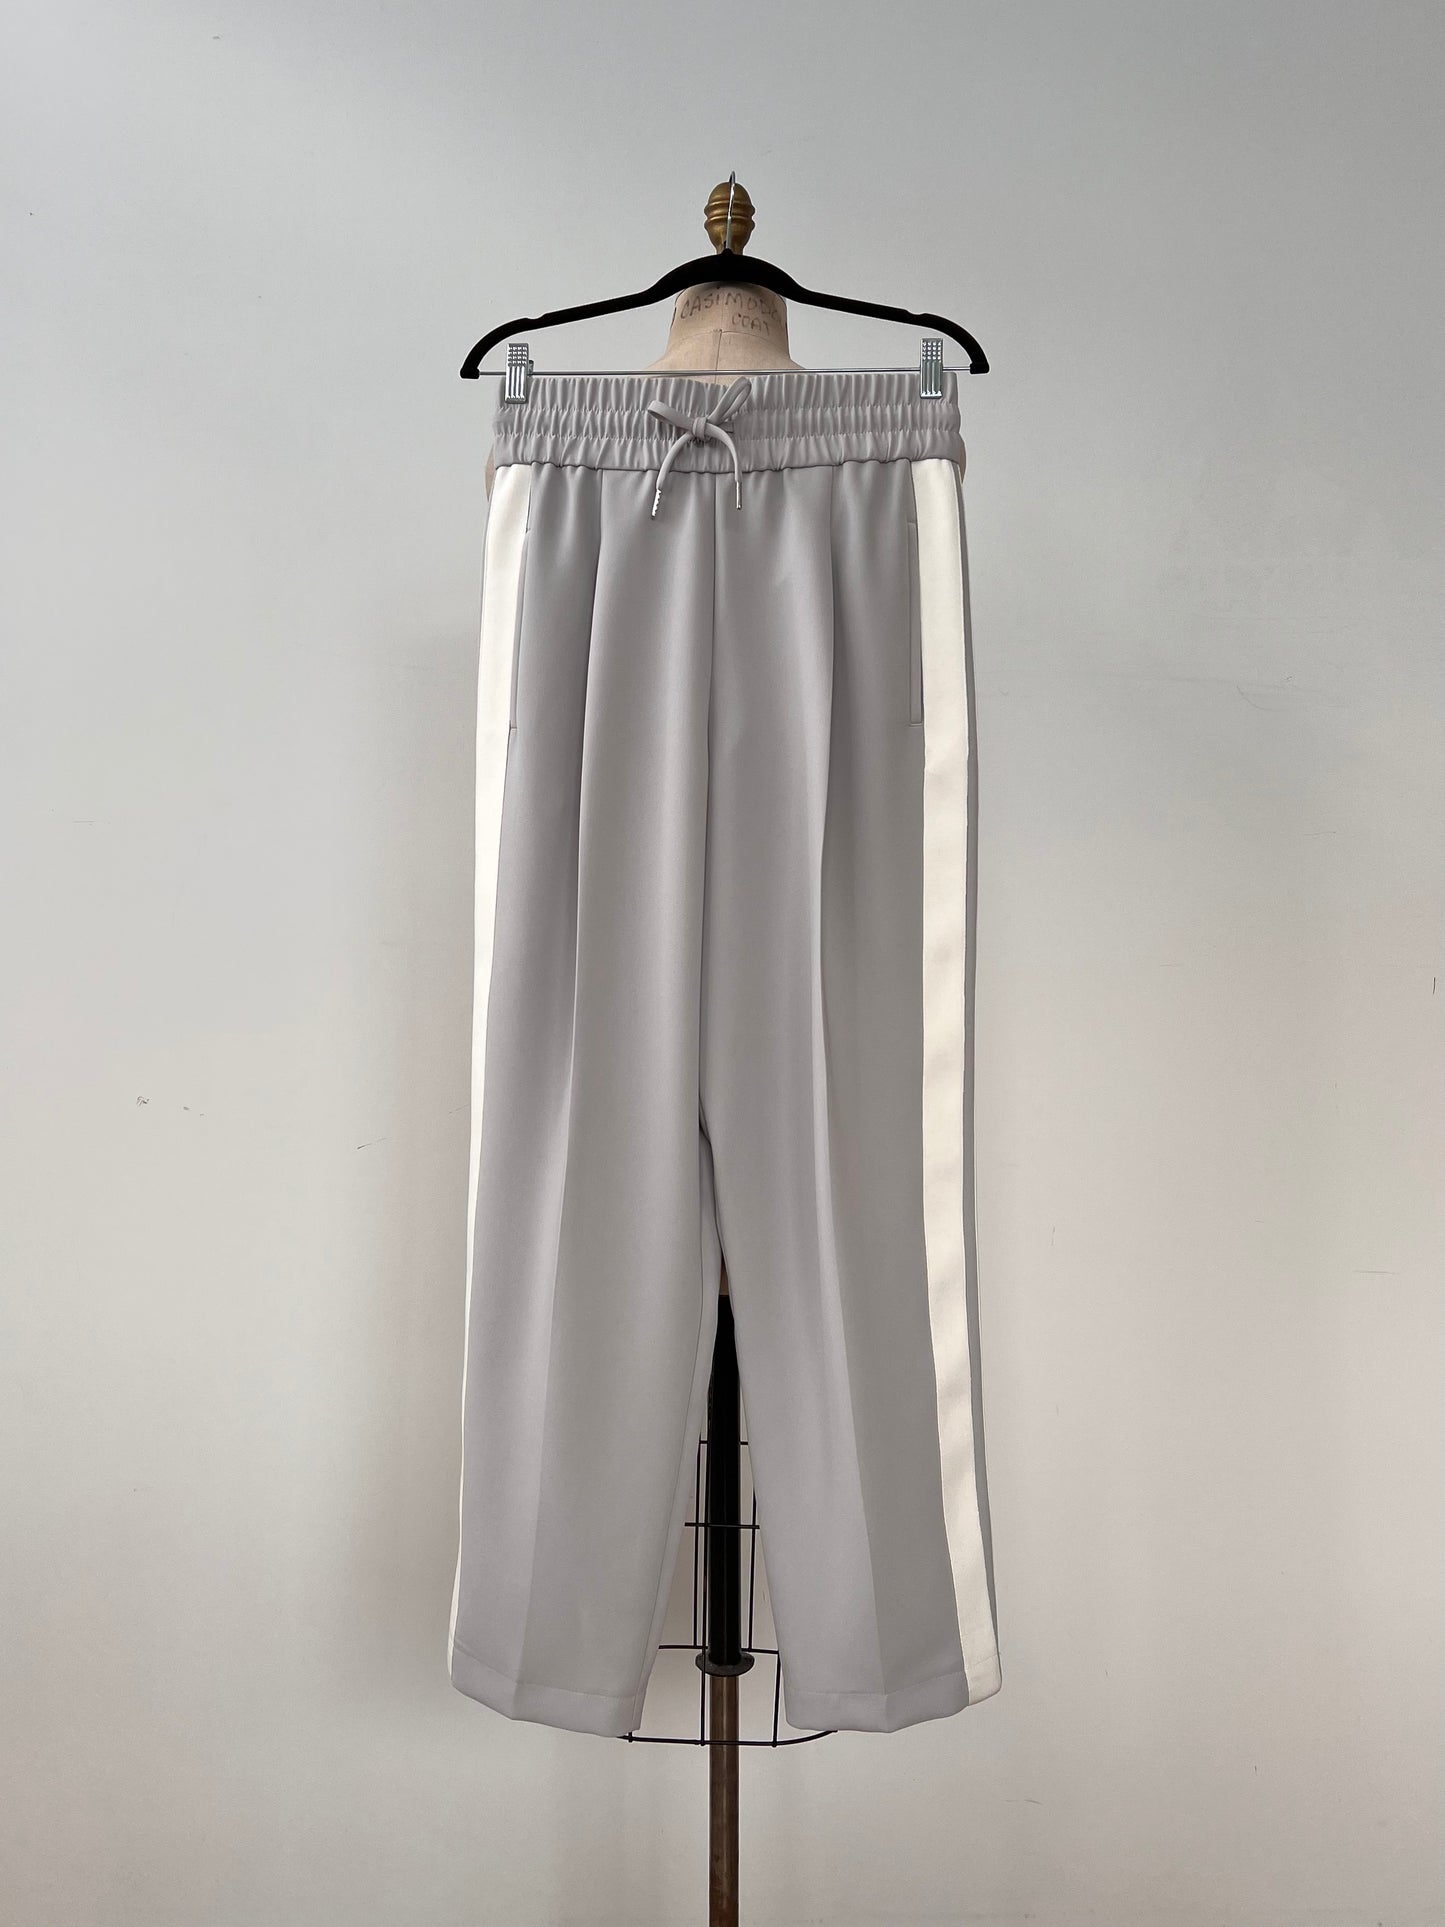 Pantalon jogger gris perle à galons blancs (6)